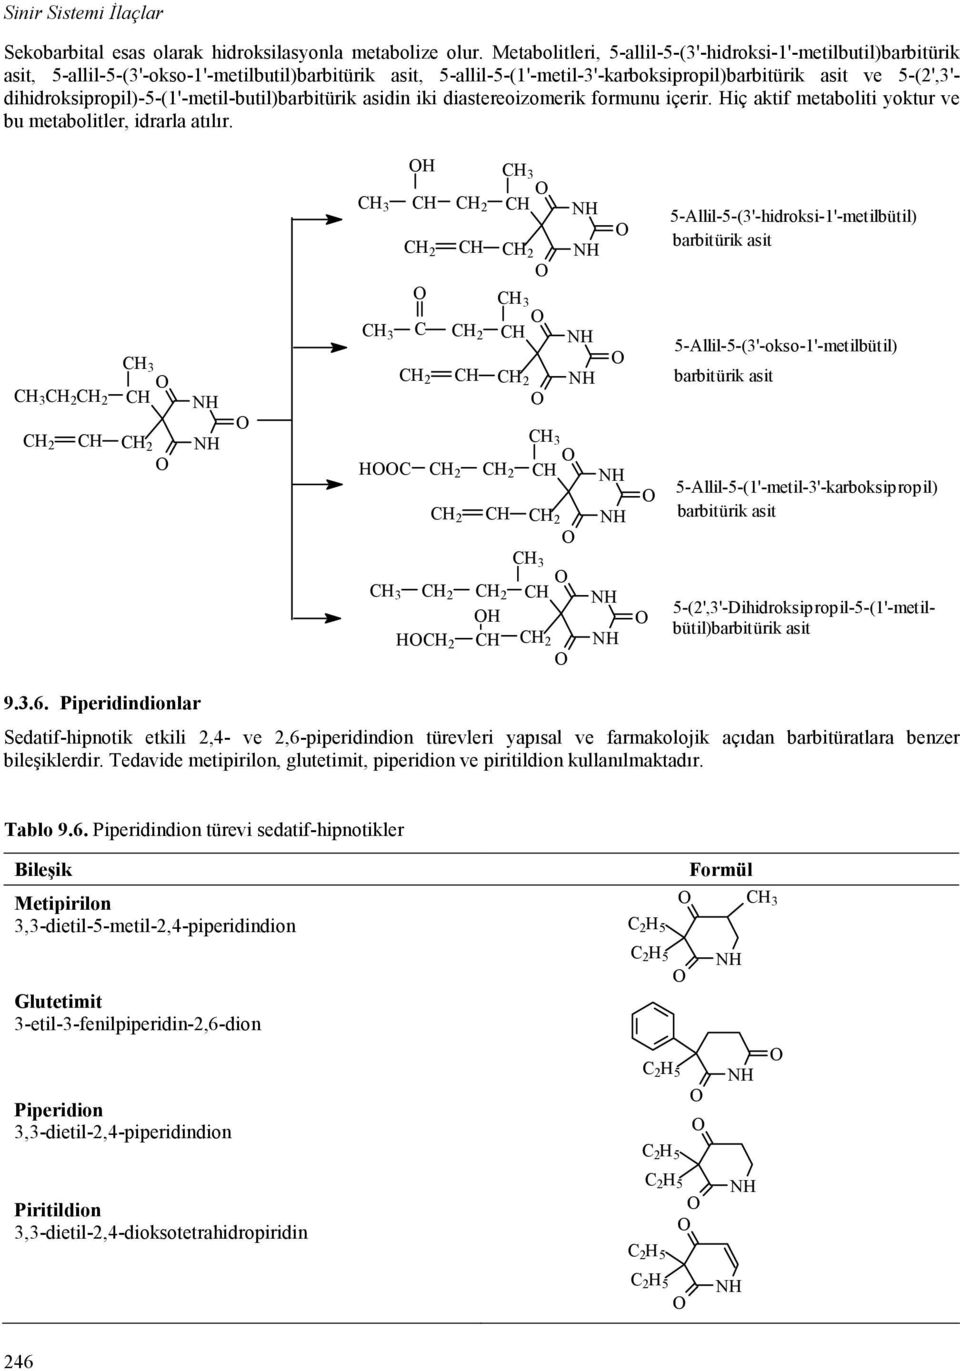 dihidroksipropil)-5-(1'-metil-butil)barbitürik asidin iki diastereoizomerik formunu içerir. iç aktif metaboliti yoktur ve bu metabolitler, idrarla atılır.